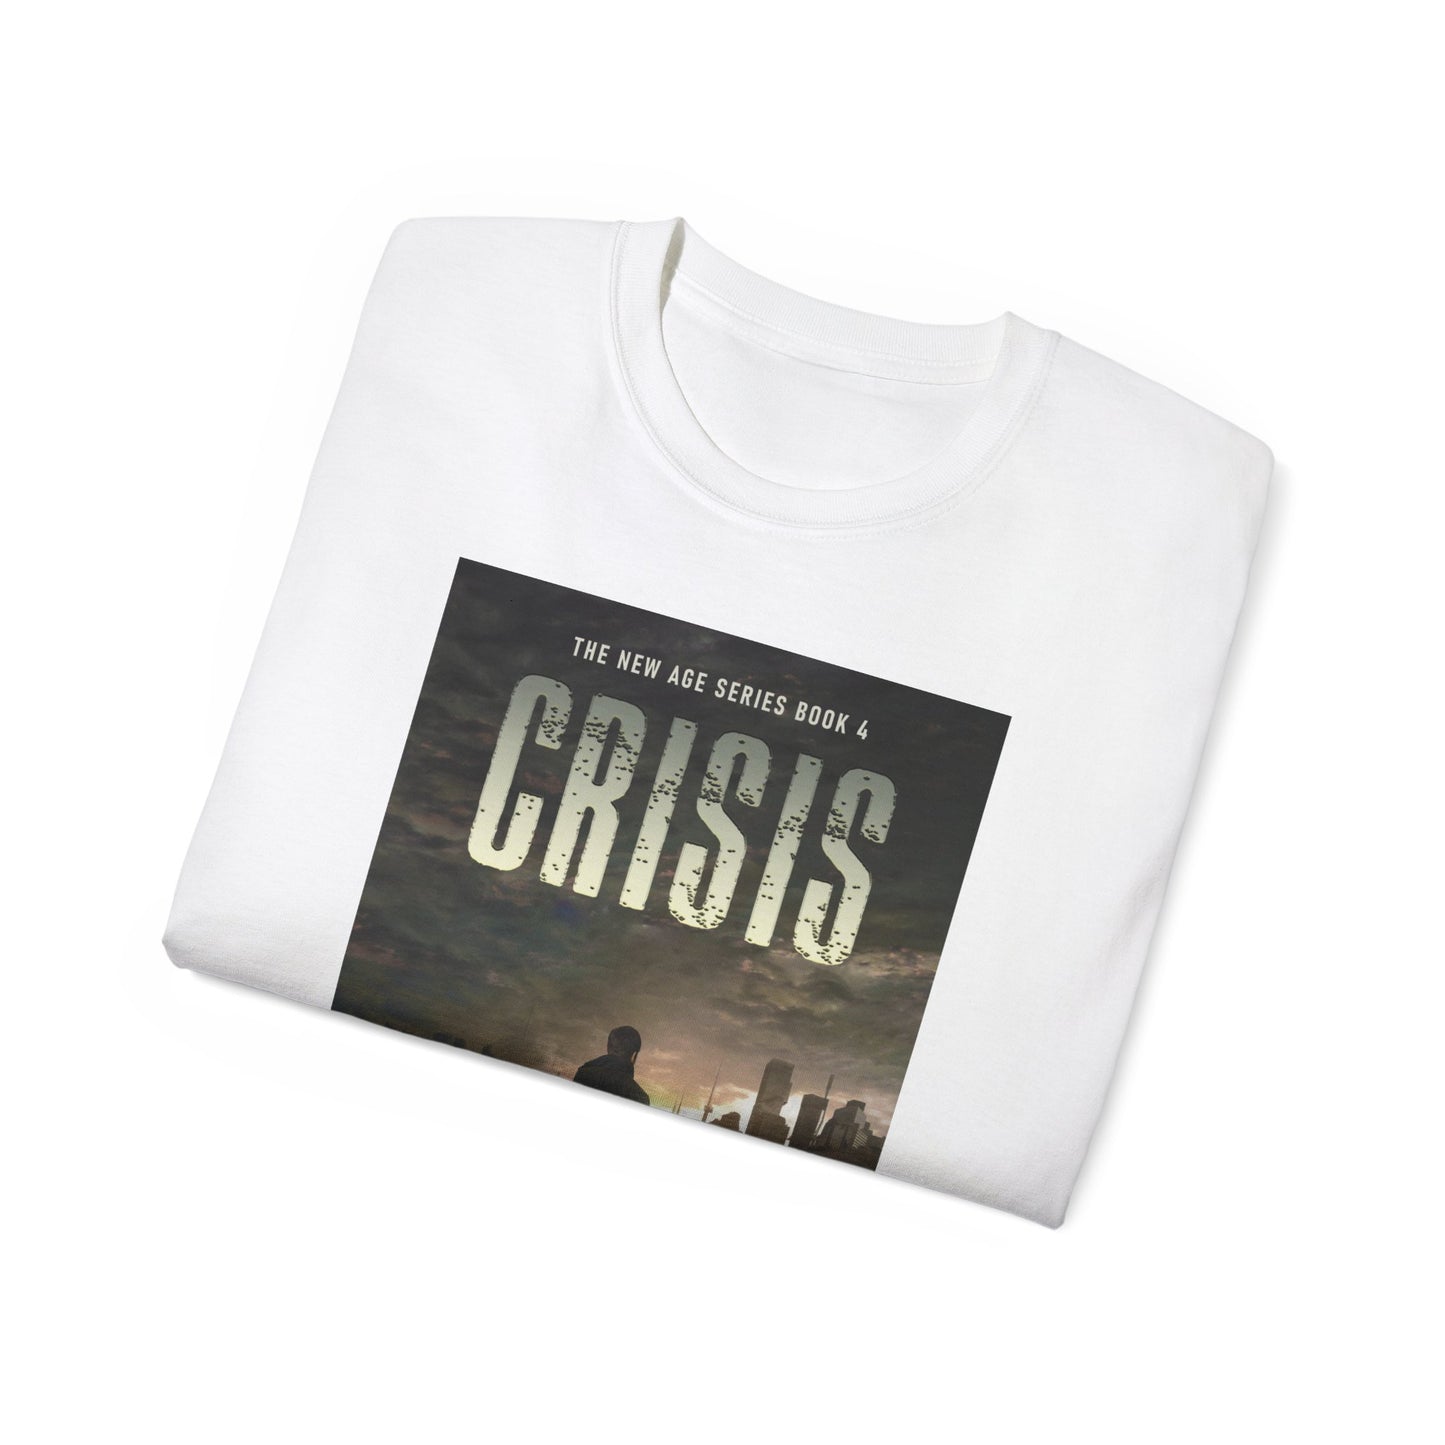 Crisis - Unisex T-Shirt